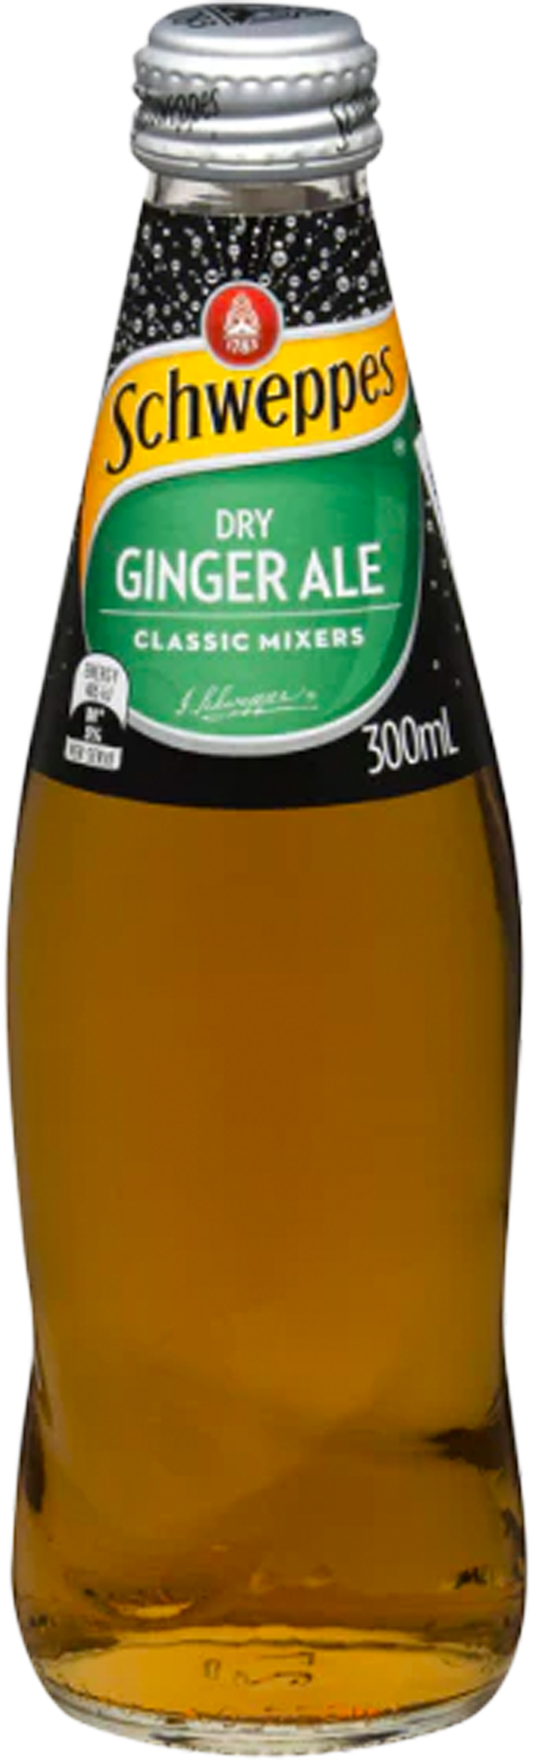 Schweppes Dry Ginger Ale Glass Bottle 300ml